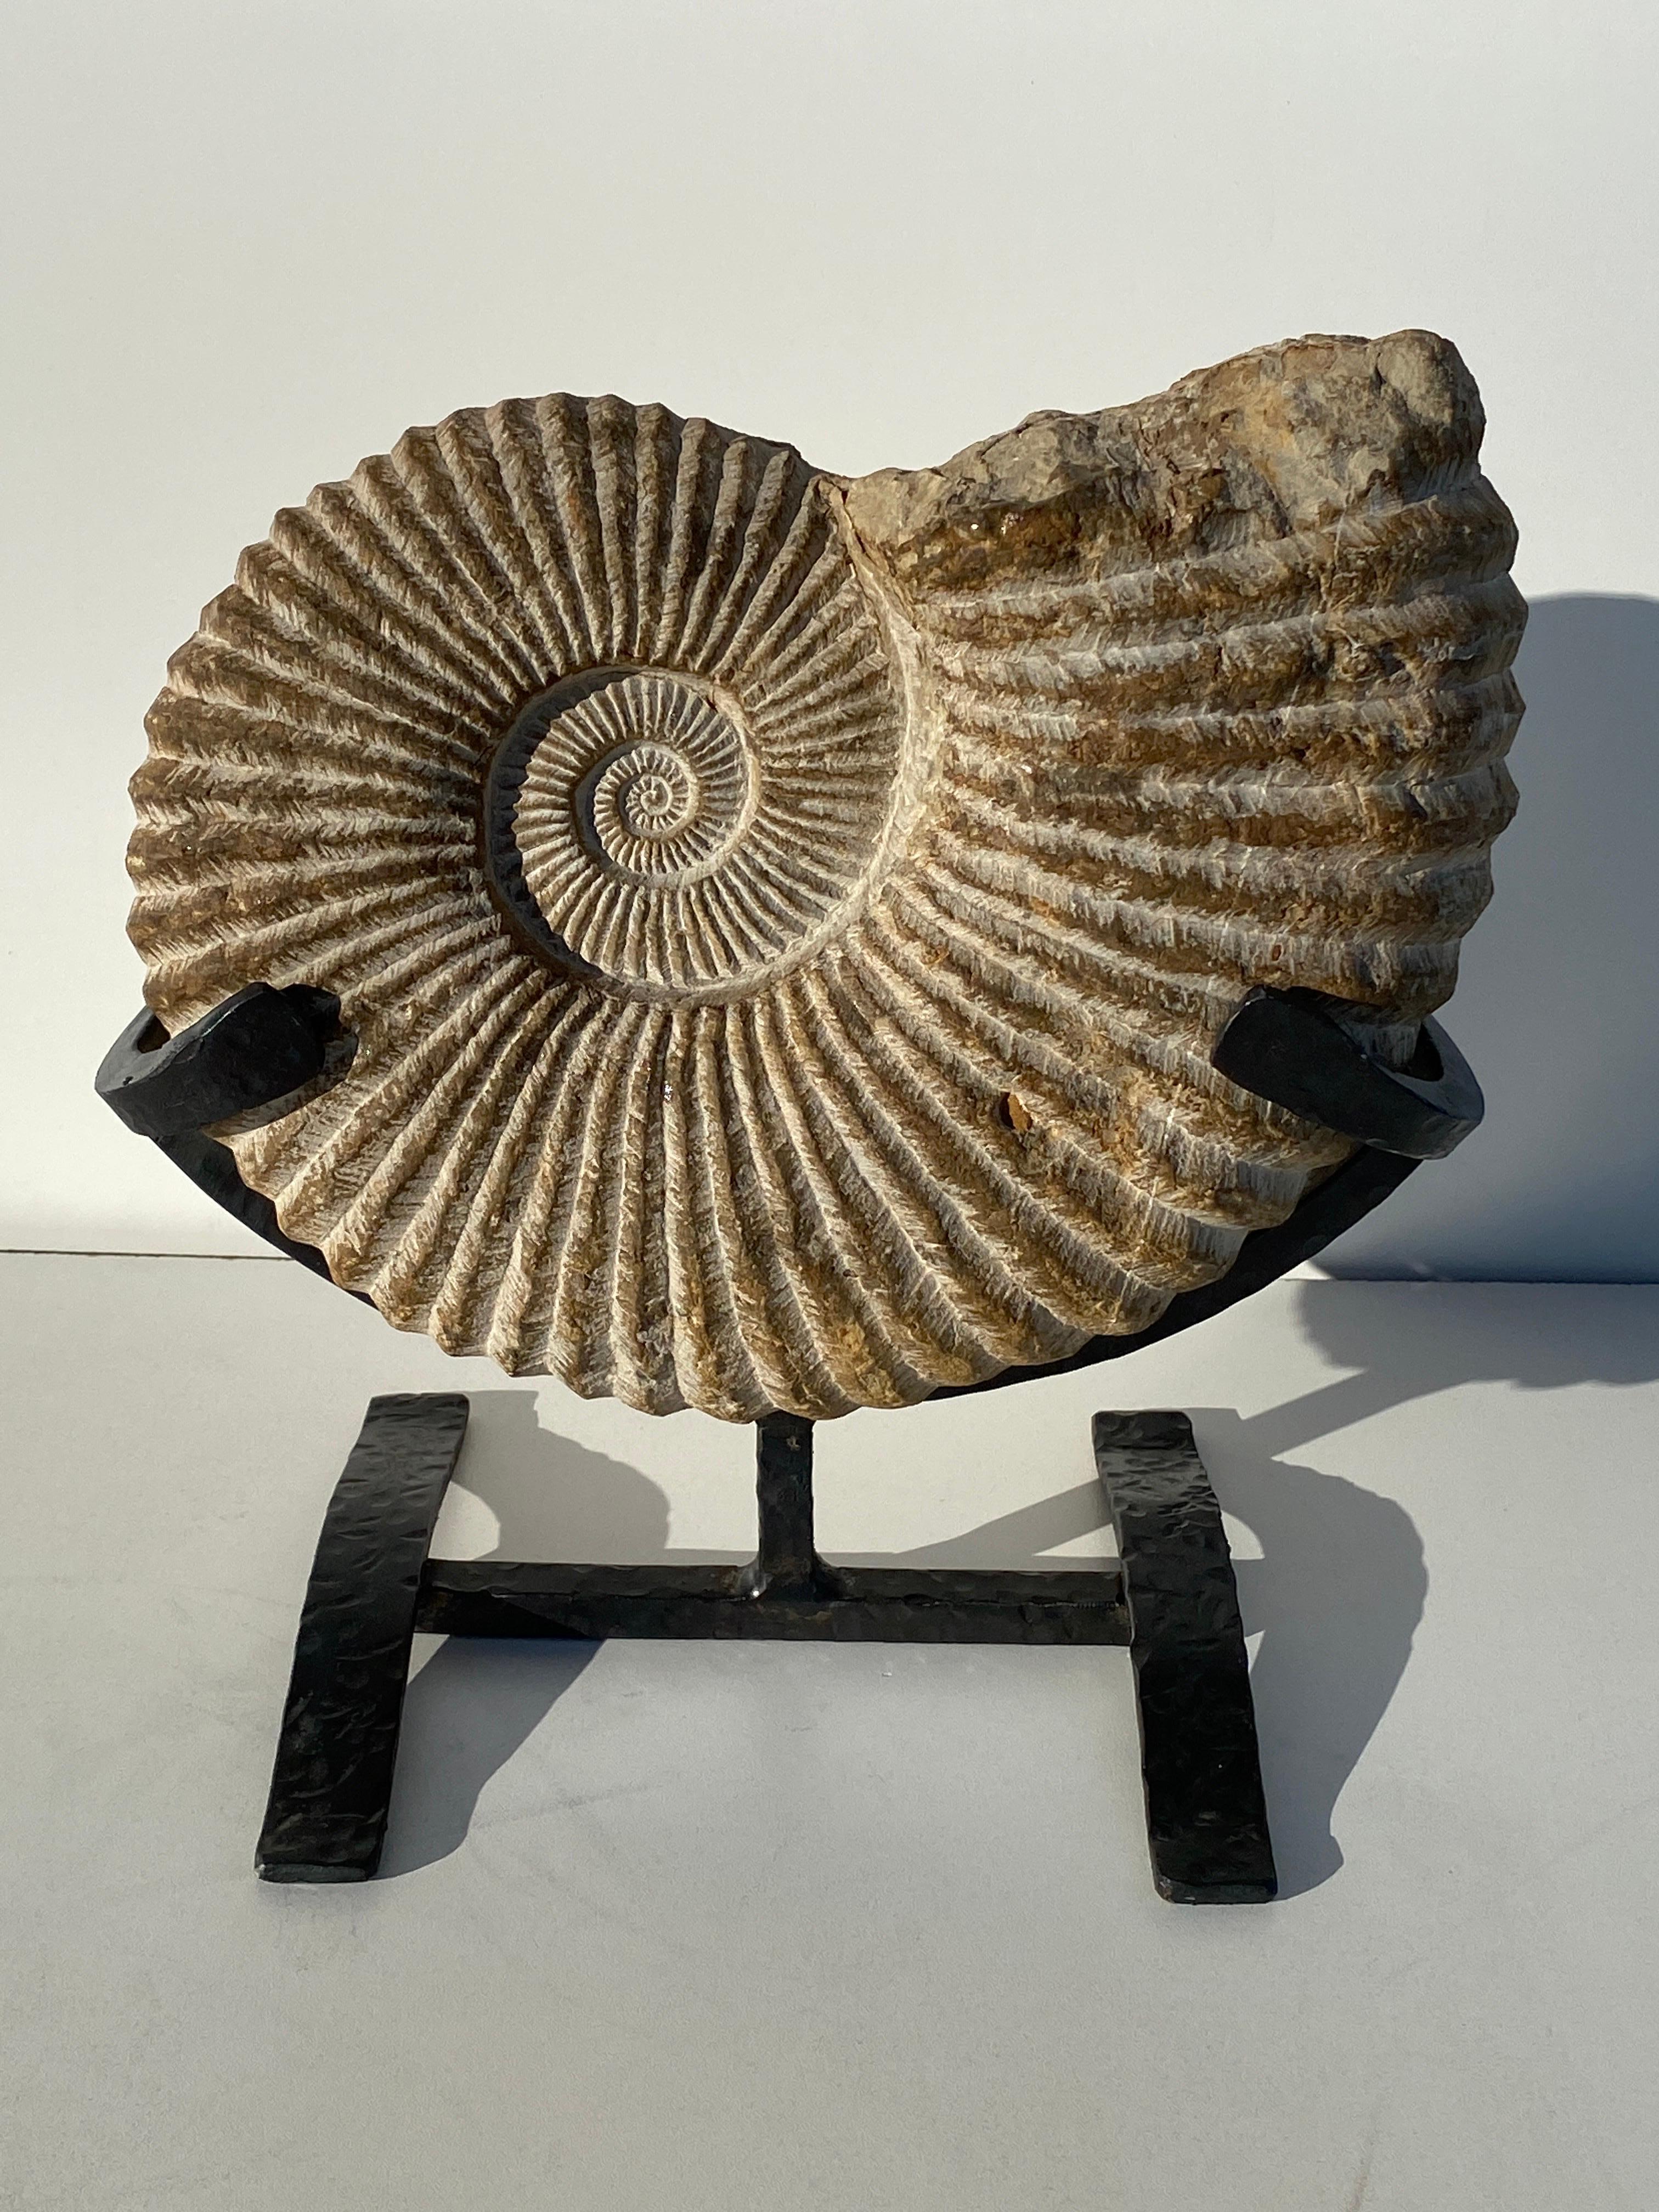 Prehistoric fossilized ammonite on custom metal base.